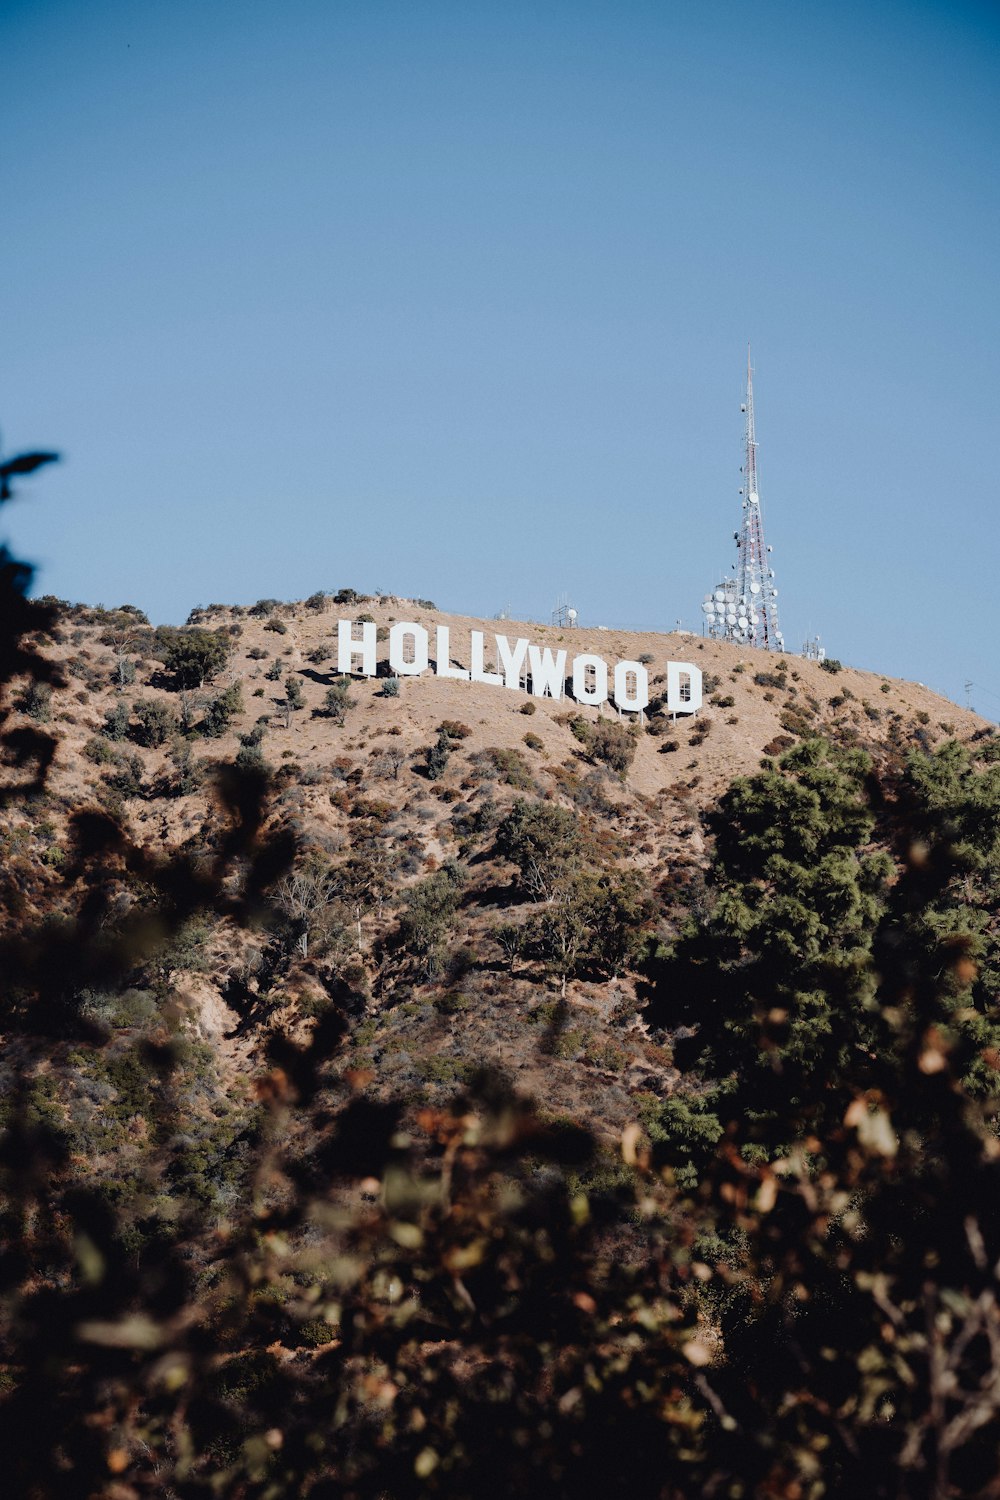 o sinal de hollywood está no topo de uma colina